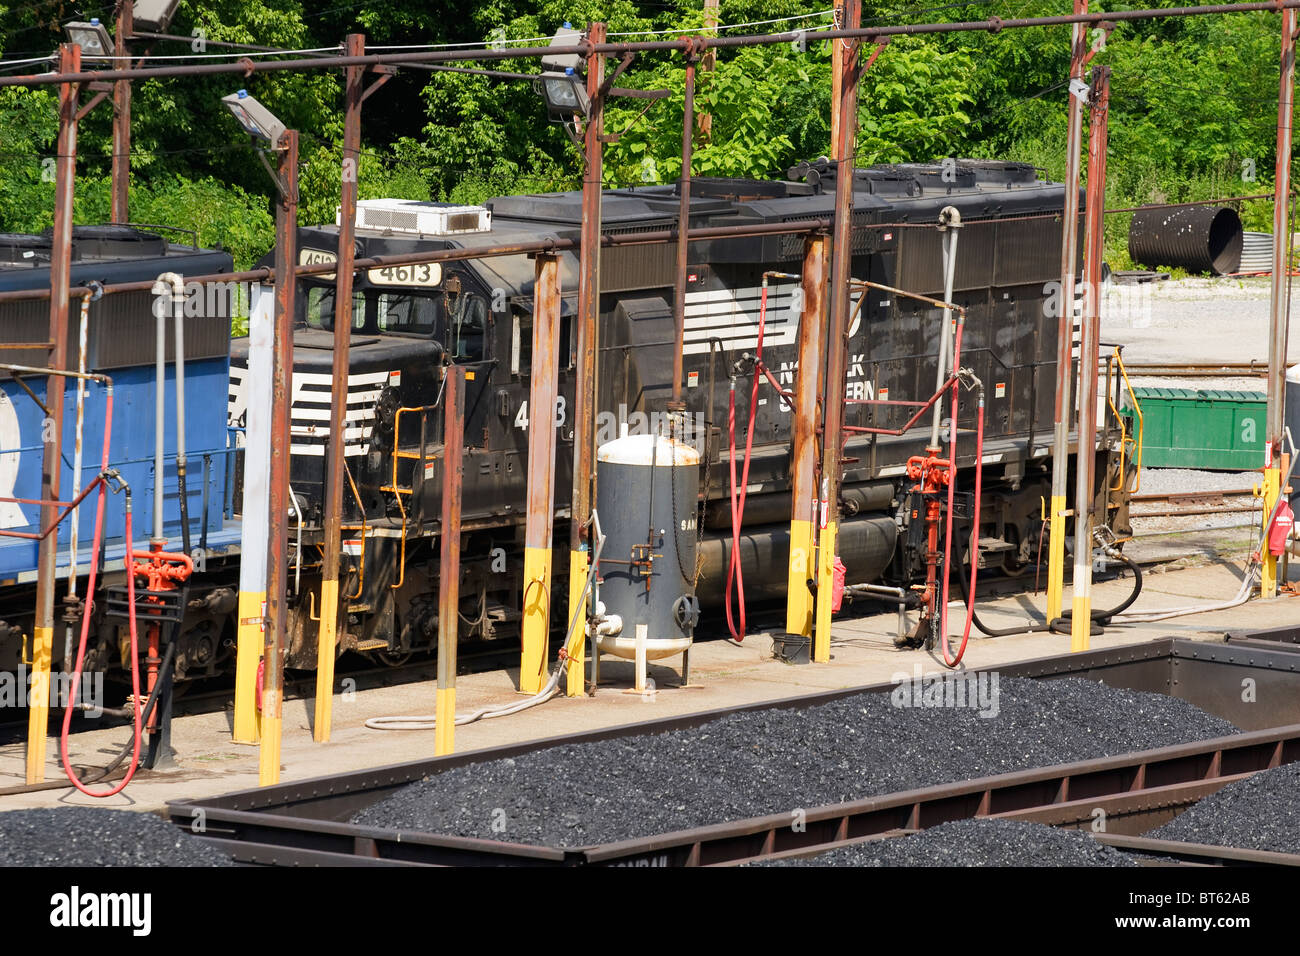 Ein Norfolk Southern Besitz an einer Tankstelle in einem Railyard in Dickinson, WV in der Nähe von Charleston, West Virginia Eisenbahn Lokomotive. Stockfoto